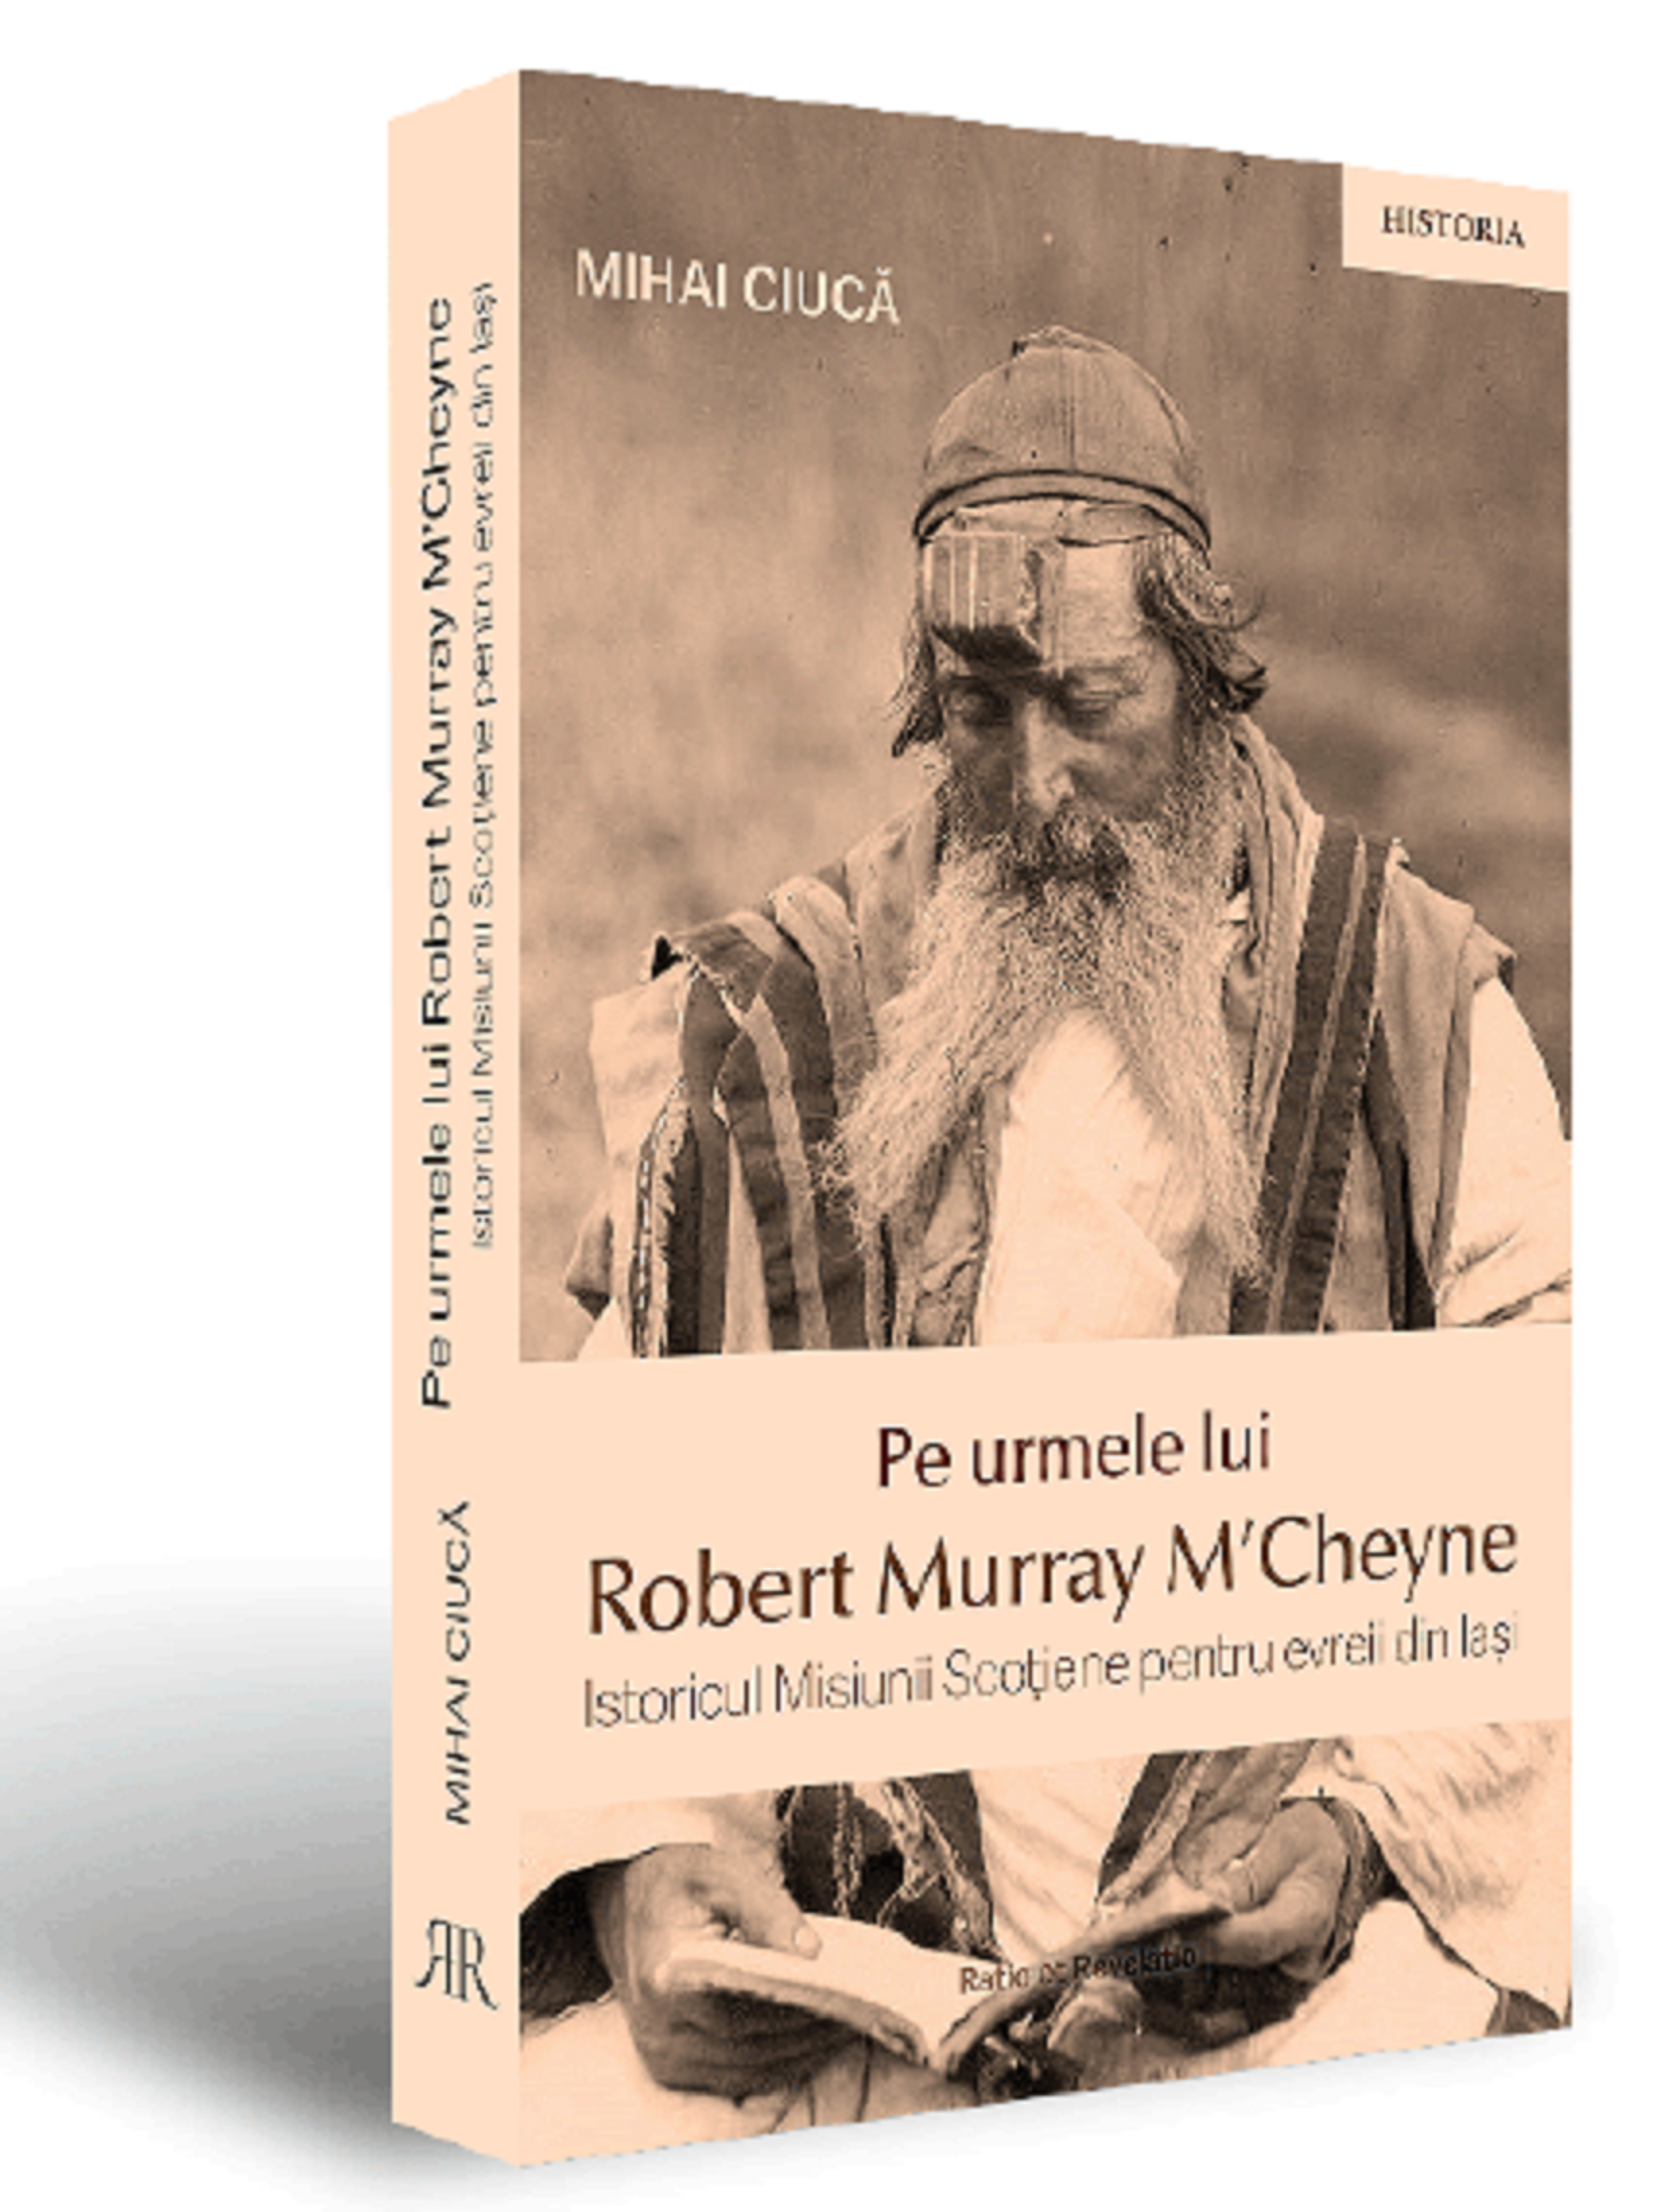 Pe urmele lui Robert Murray M’Cheyne | Mihai Ciuca carturesti.ro poza bestsellers.ro